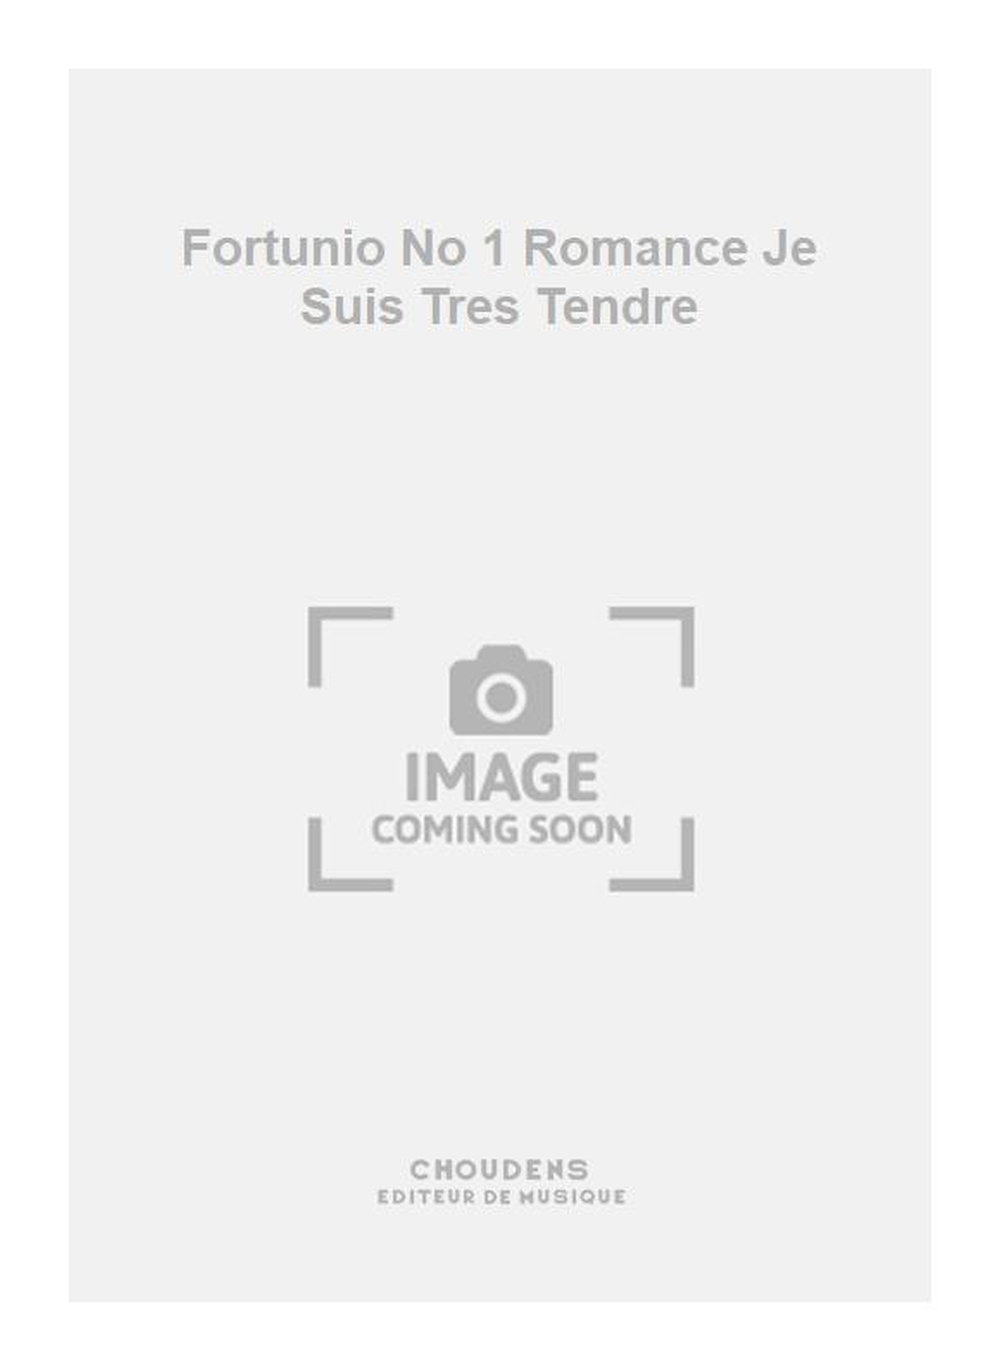 Messager: Fortunio No 1 Romance Je Suis Tres Tendre